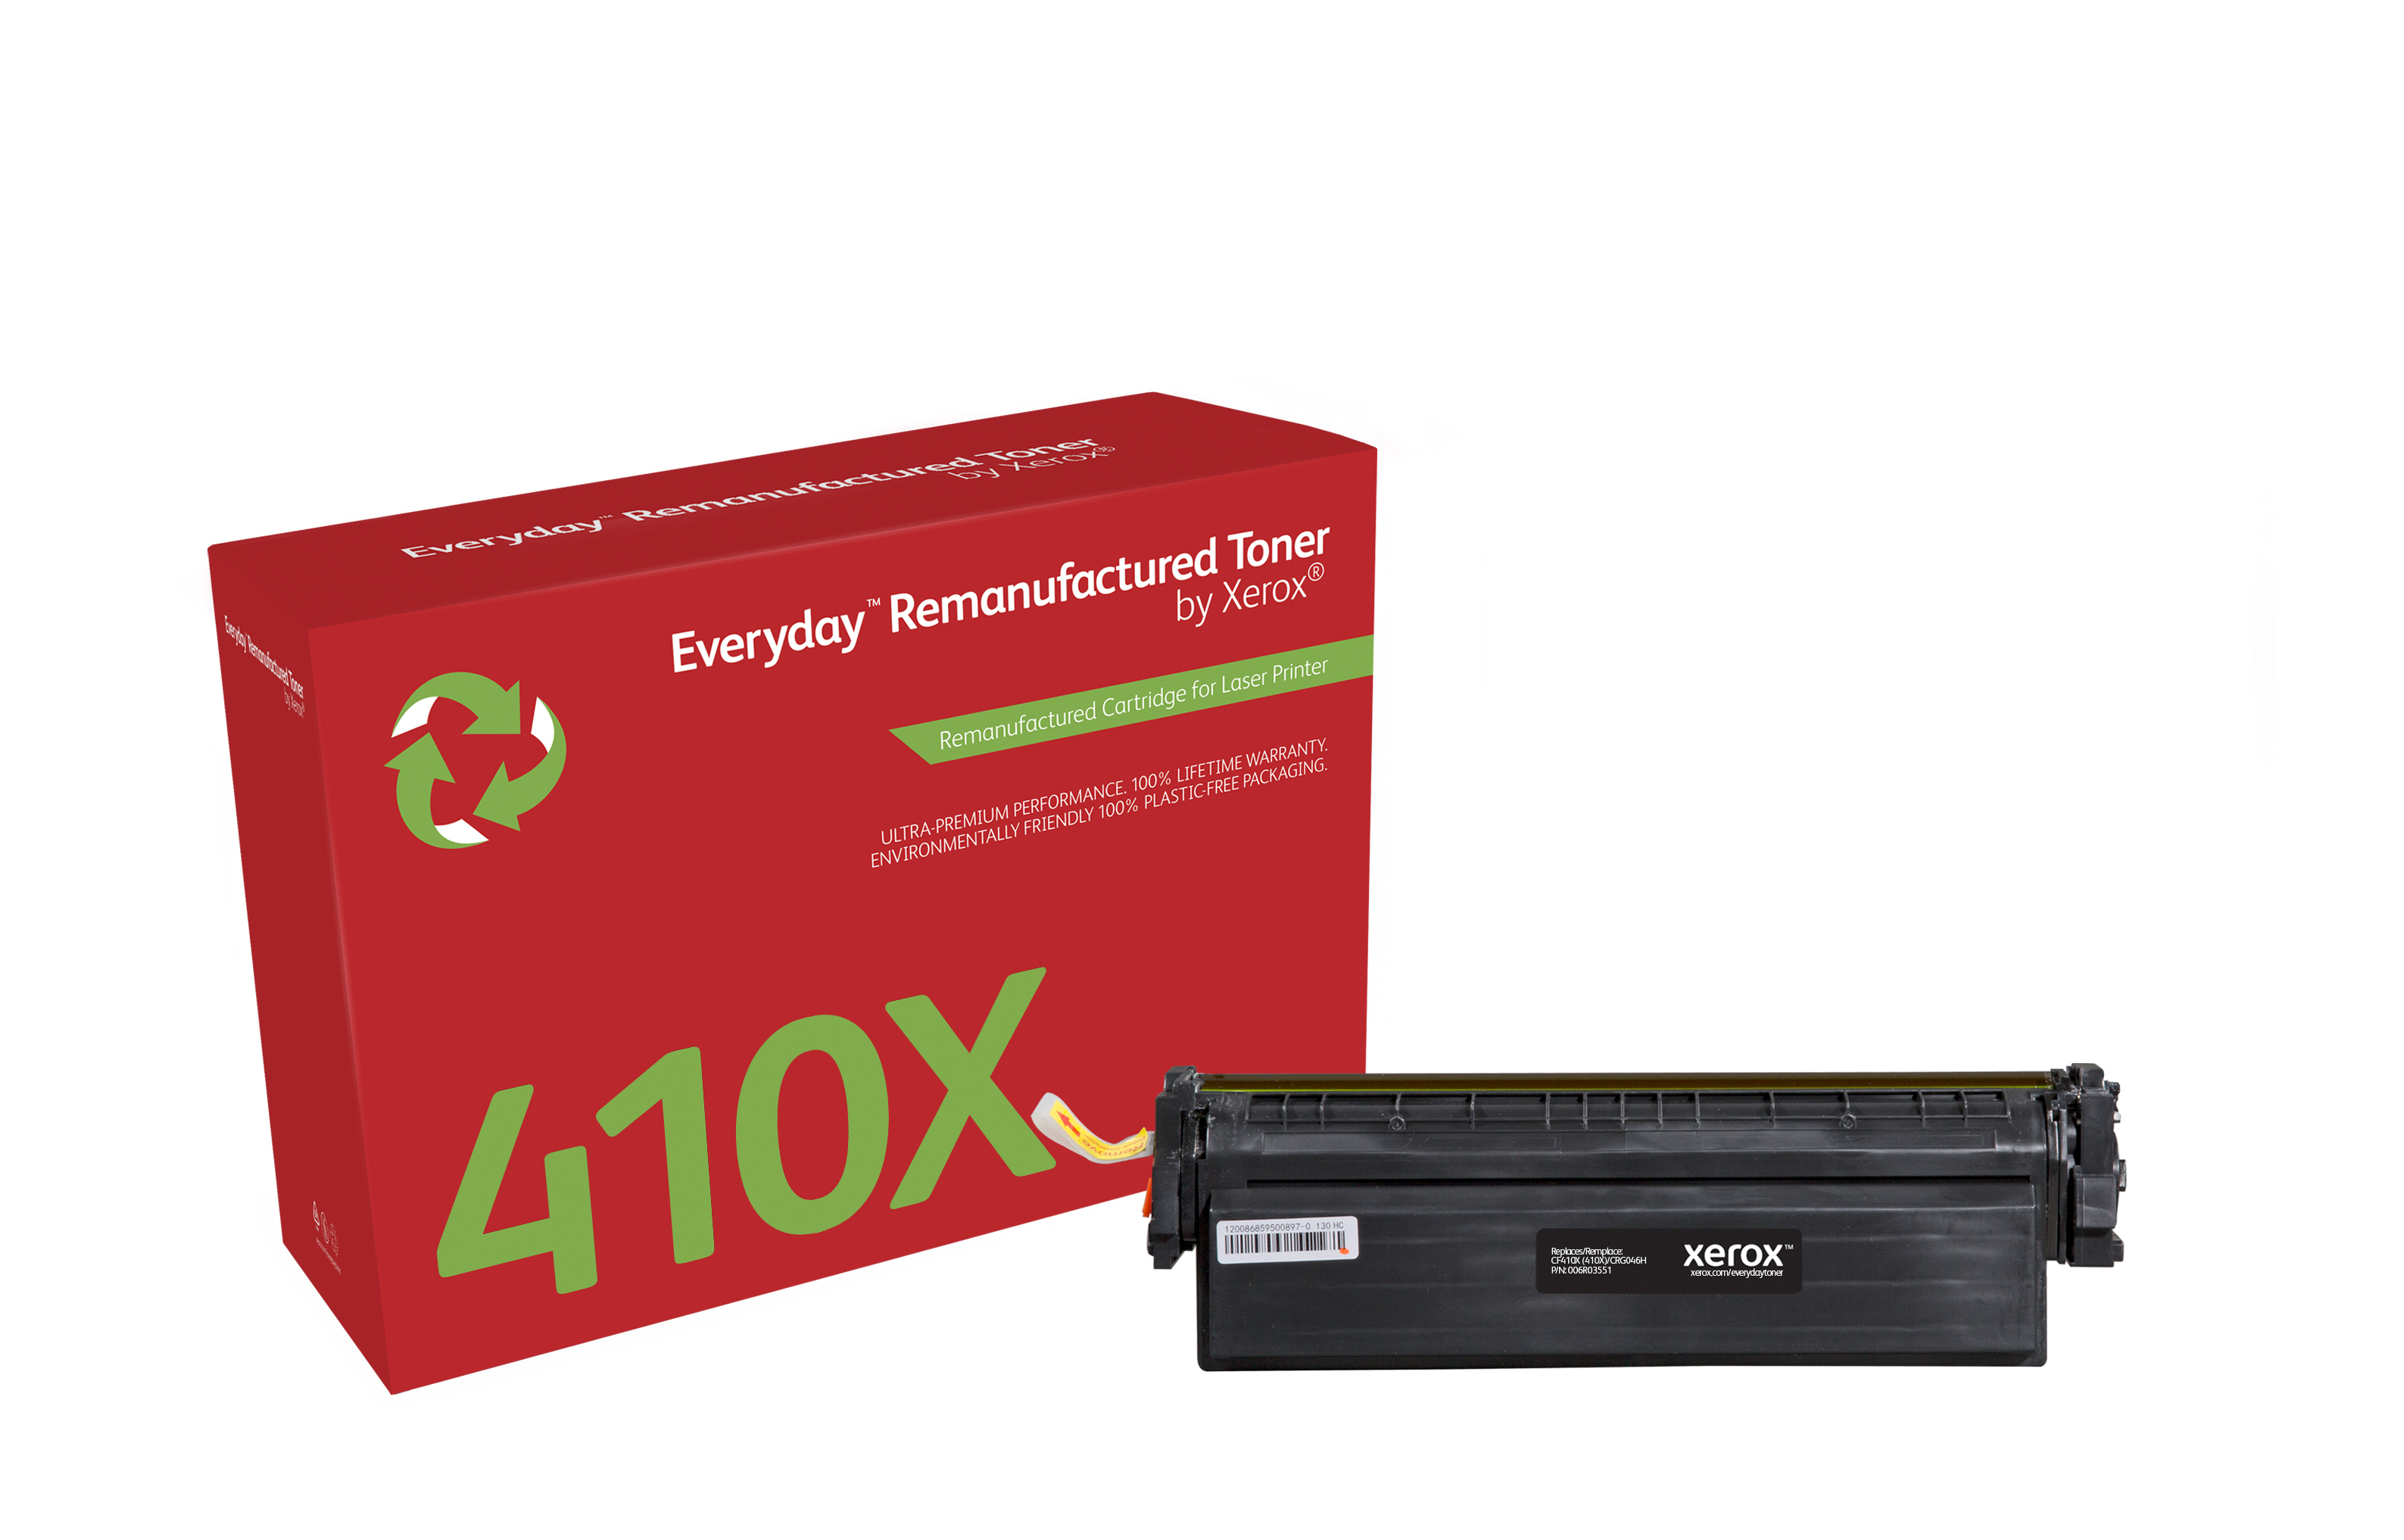 Xerox Everyday™ Zwart Remanufactured Toner van Xerox compatible met HP 410X (CF410X), High capacity